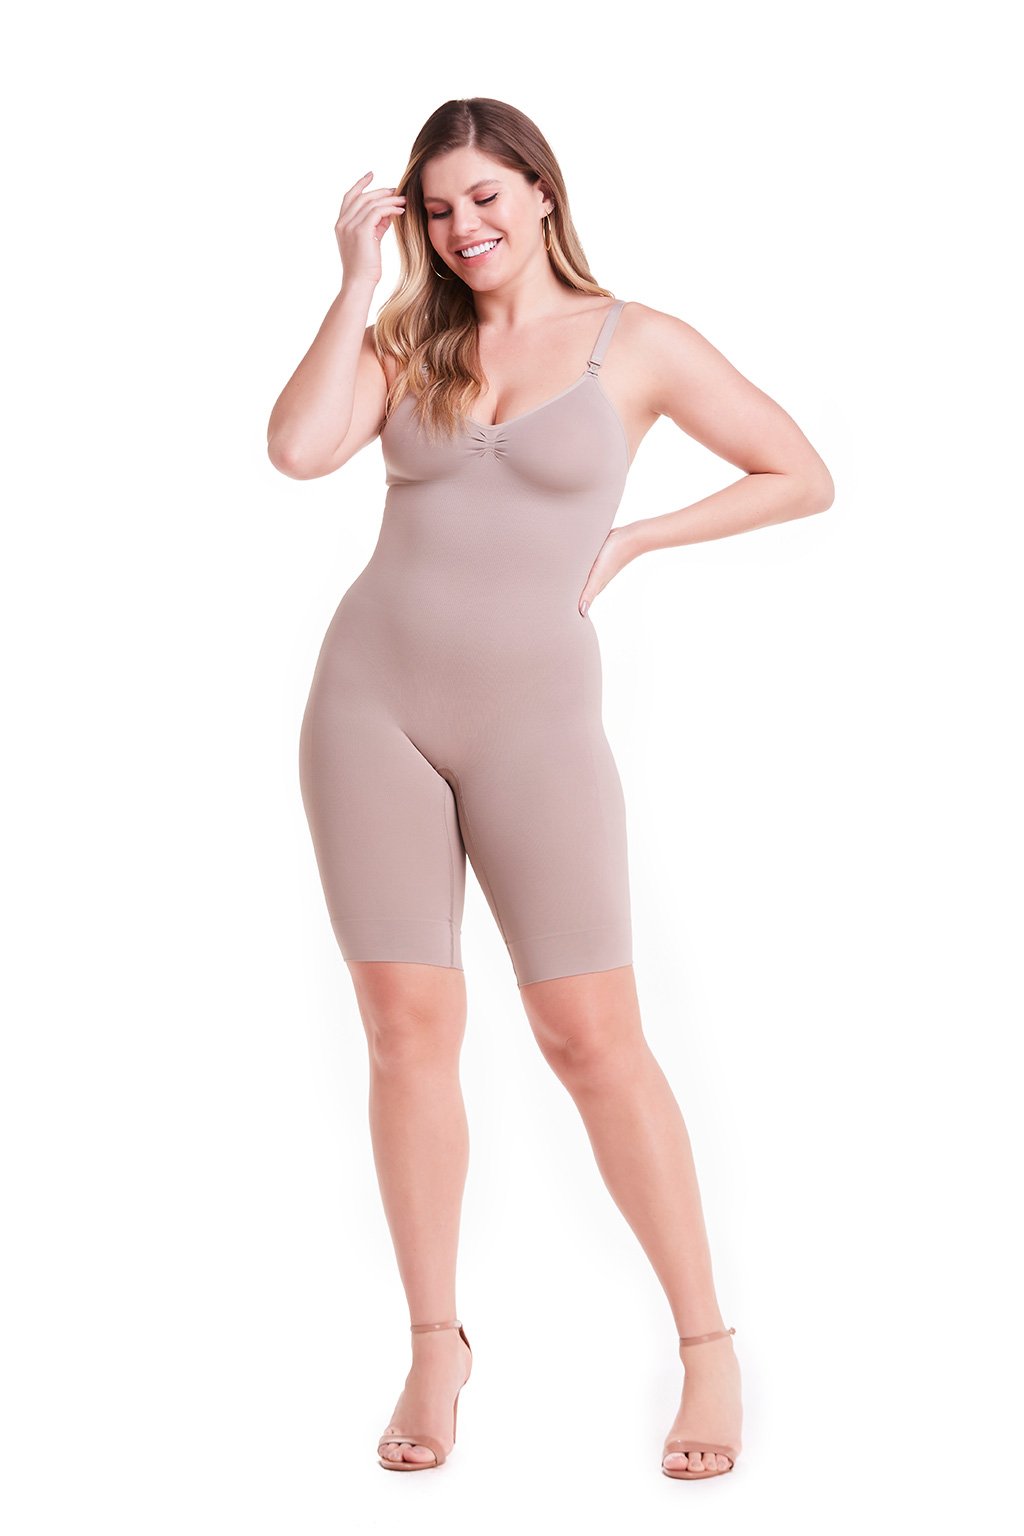 Bodyshaper For Women Tummy Control Breast Support Side Zipper Long Bodysuit  Shapewear Breasted Underwear Body Shaper